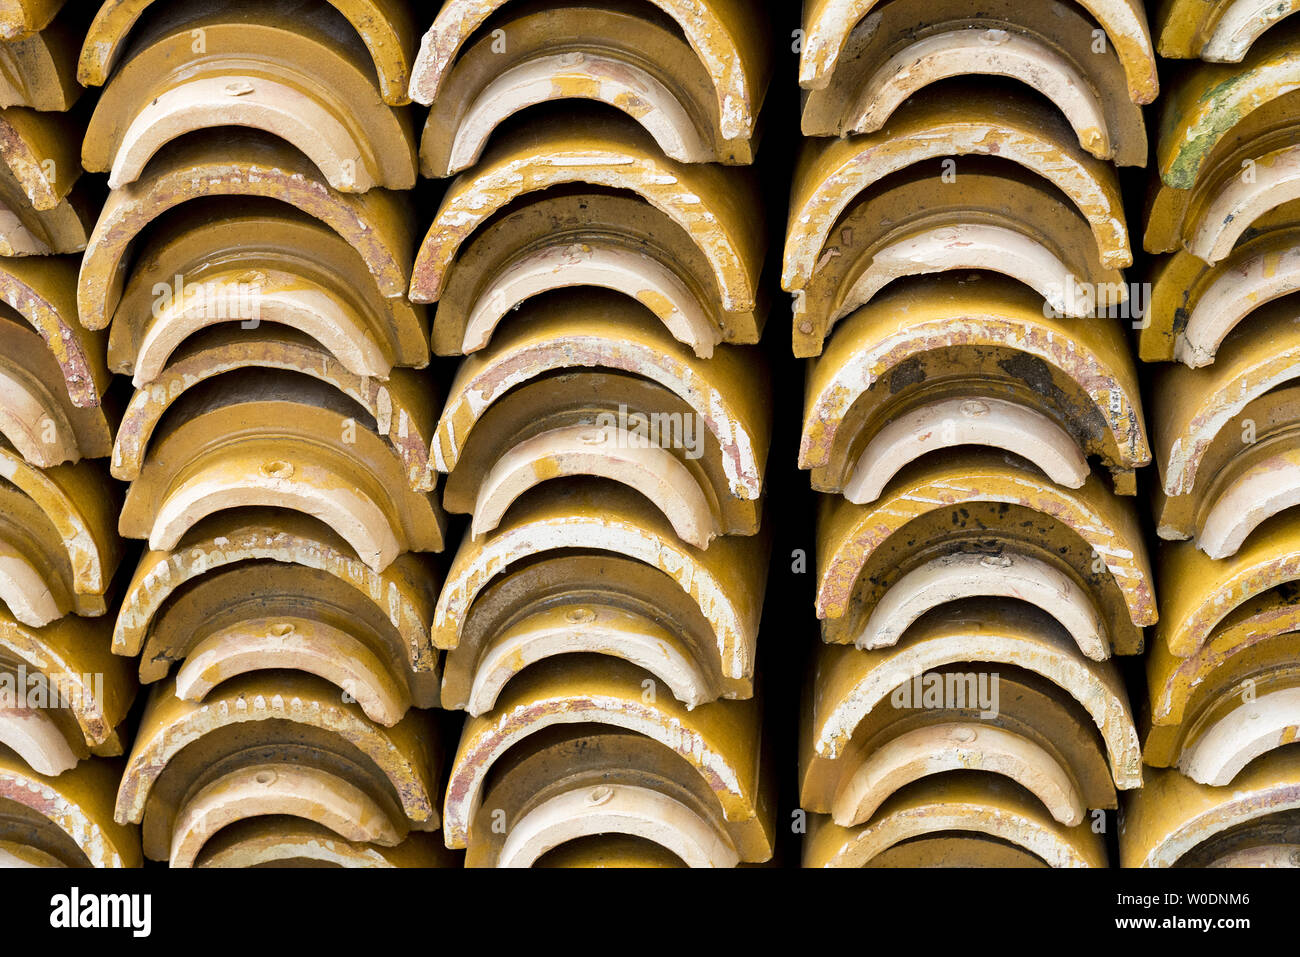 Pilas de amarillo vidriado de cerámica azulejos de techo curvo en un patrón simétrico. Foto de stock